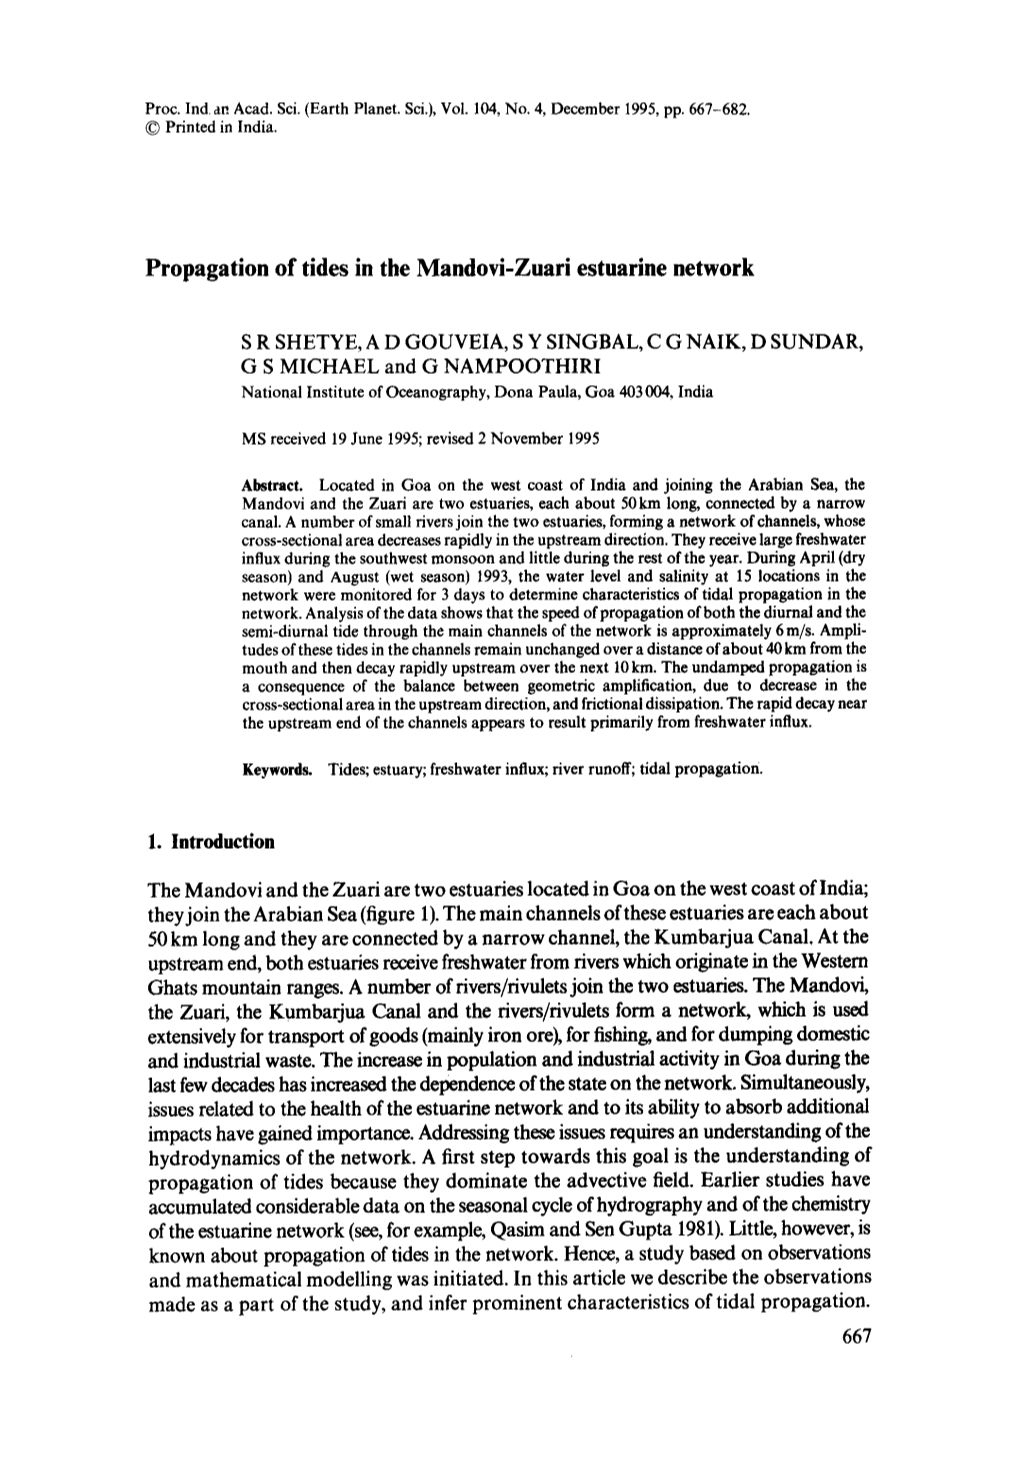 Propagation of Tides in the Mandovi-Zuari Estuarine Network